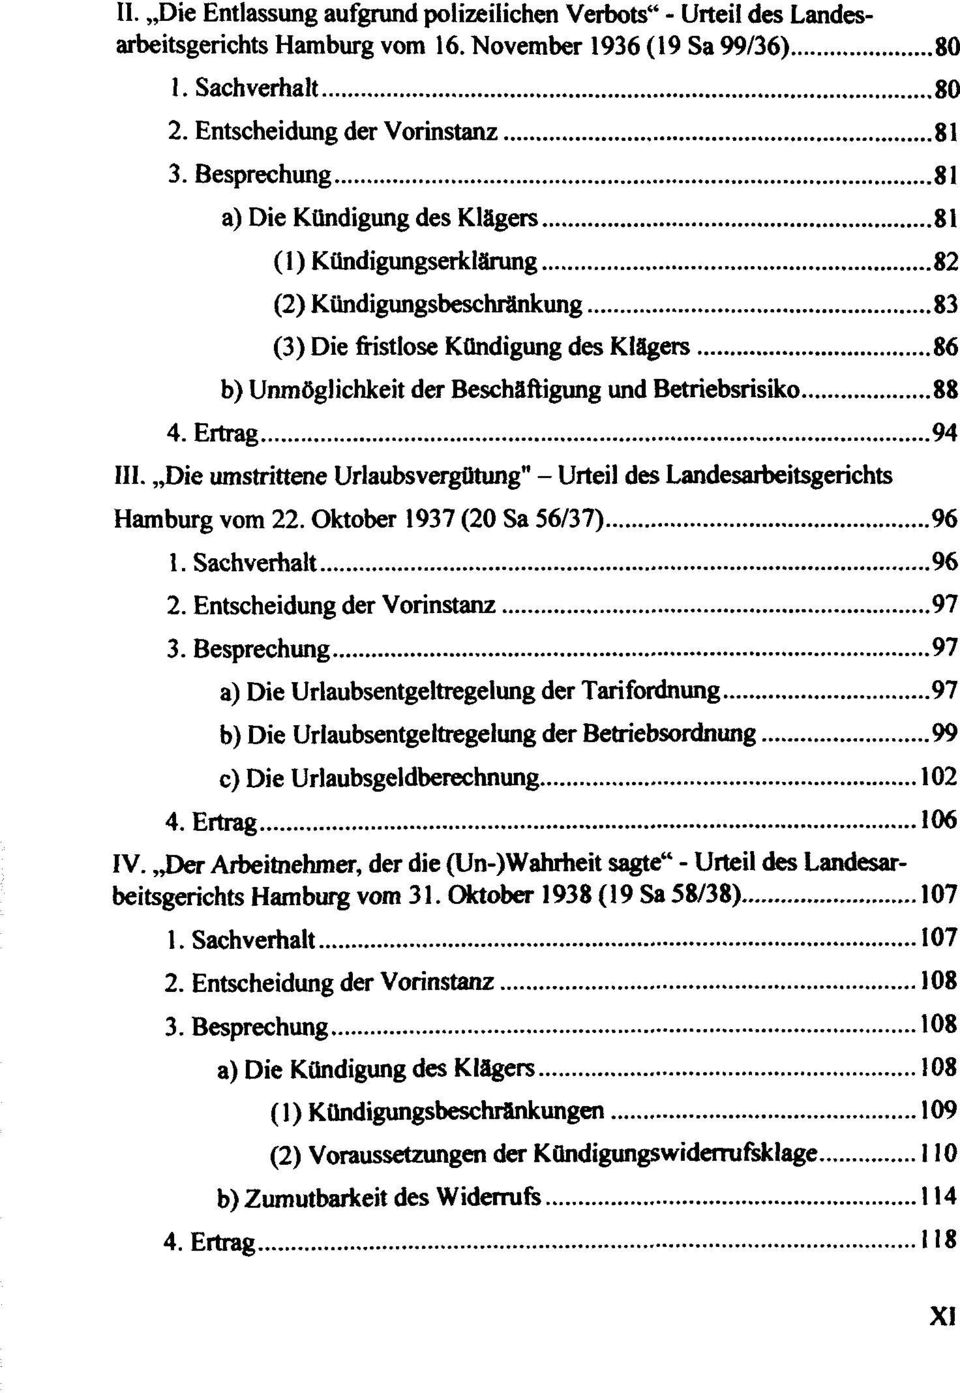 Betriebsrisiko 88 4. Ertrag 94 III. Die umstrittene Urlaubsvergütung" - Urteil des Landesarbeitsgerichts Hamburg vom 22. Oktober 1937 (20 Sa 56/37) 96 1. Sachverhalt 96 2.